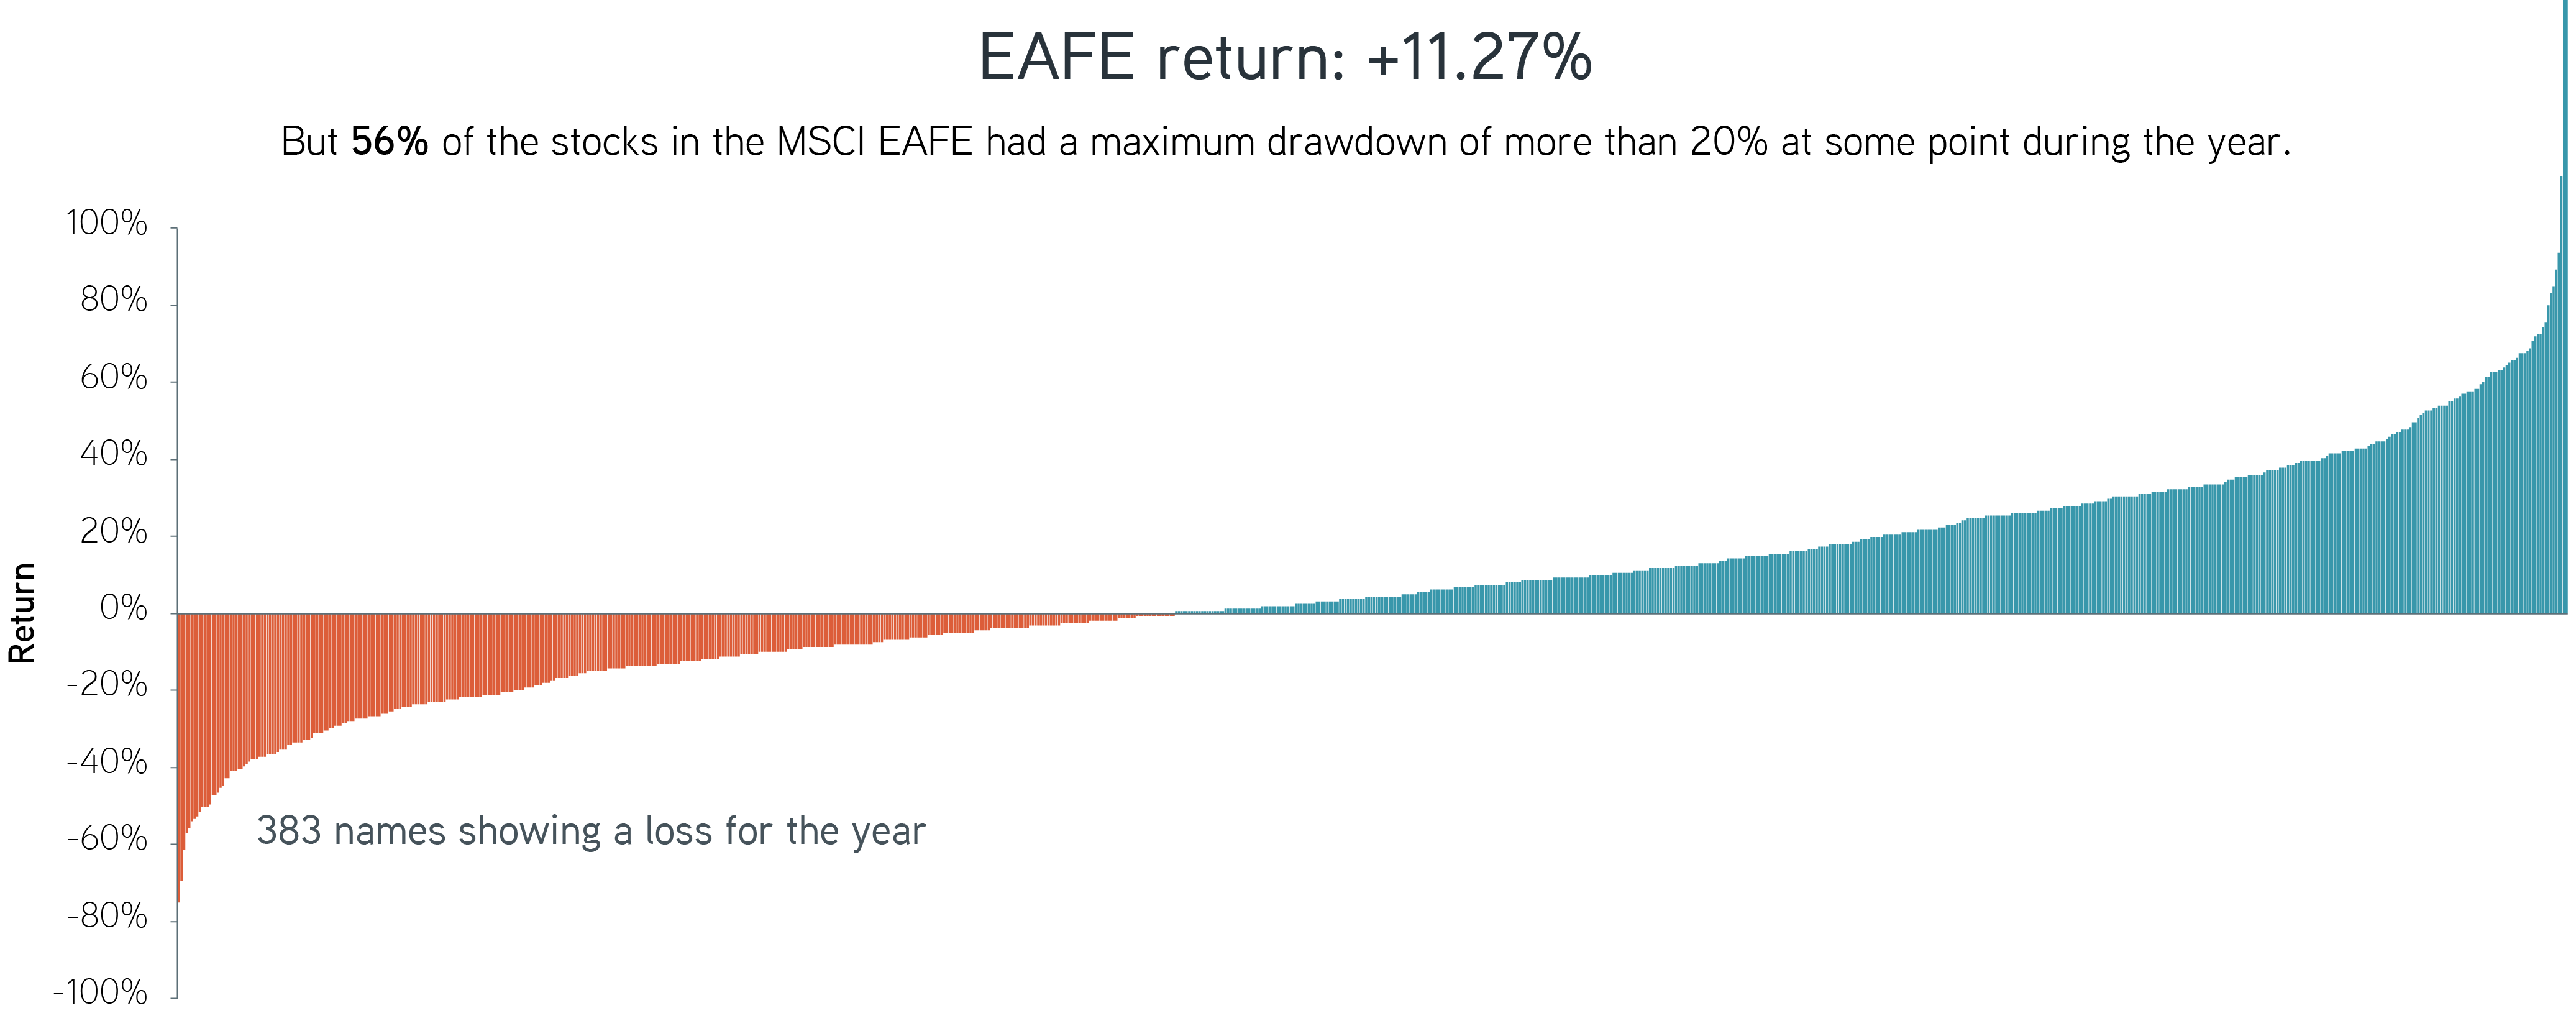 EAFE Return 2021 graph image